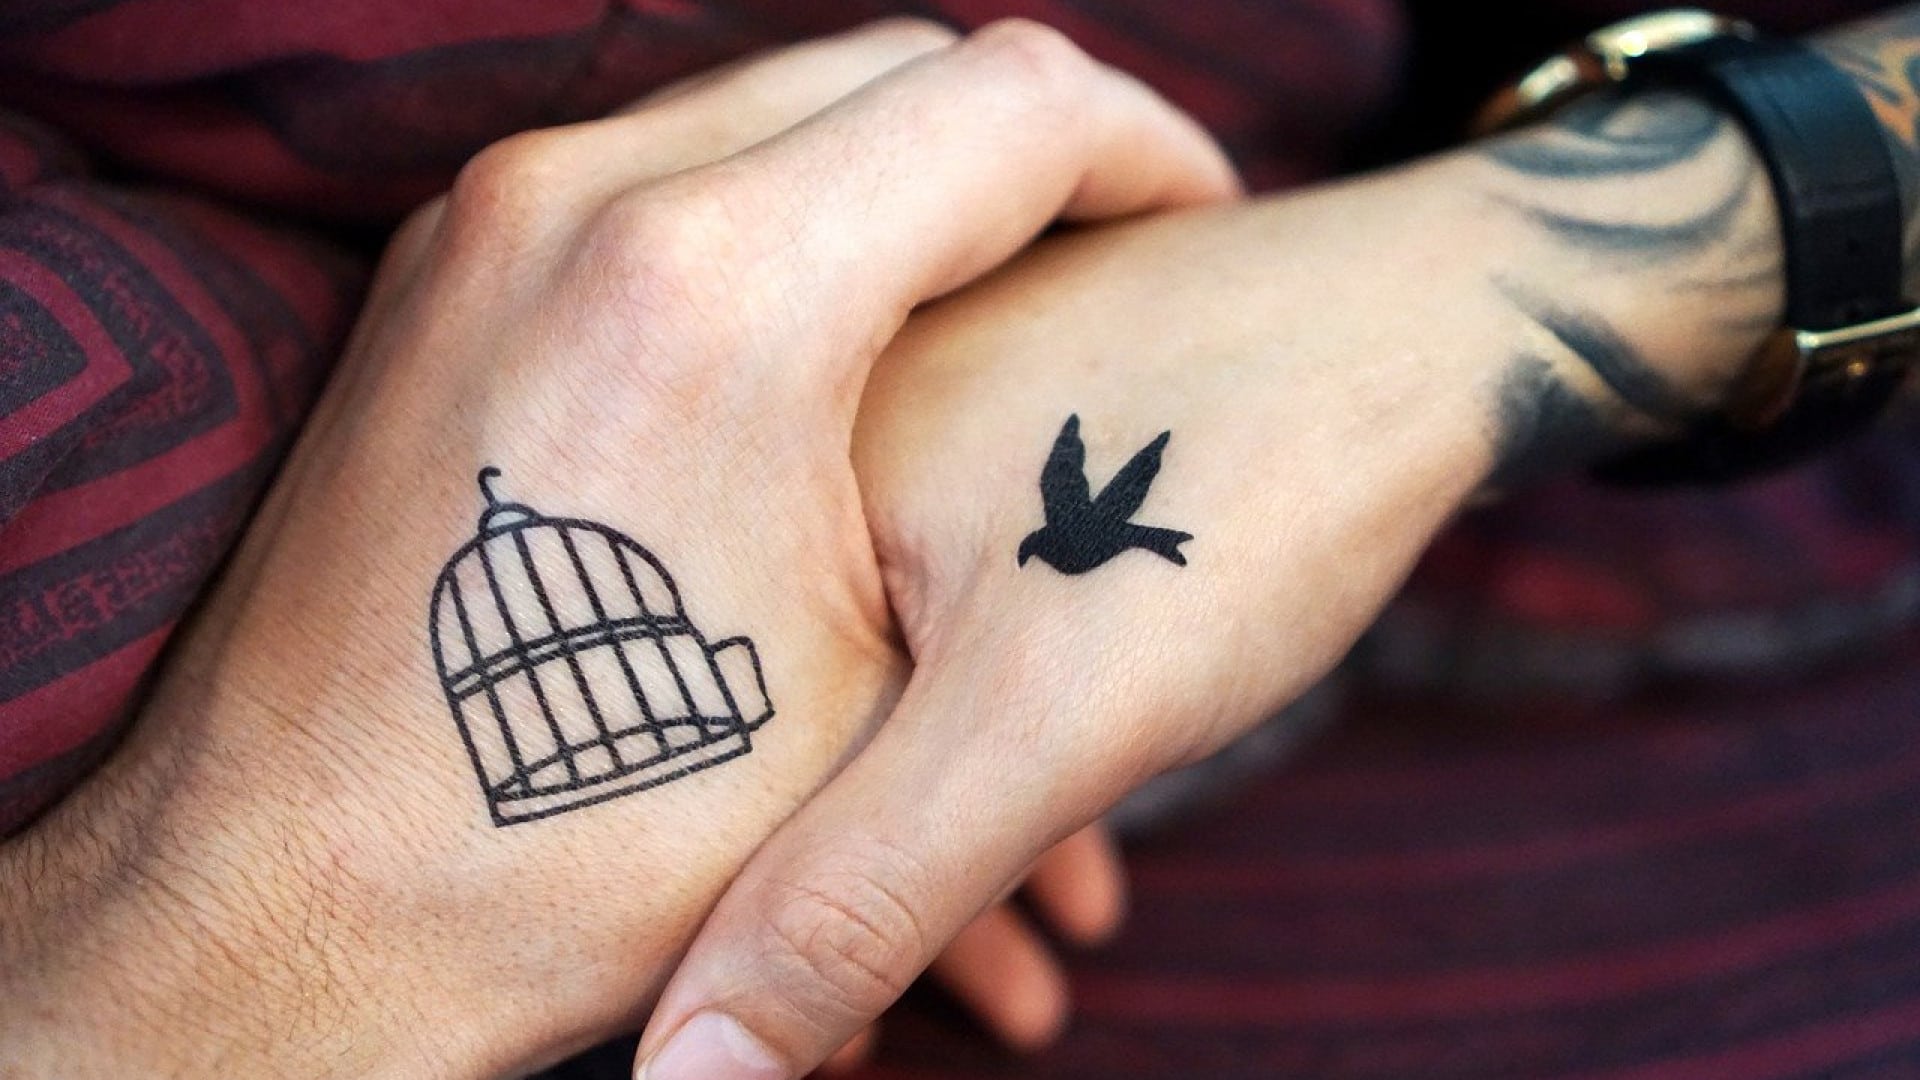 Tatouage pour homme sur la main : que faut-il savoir ?